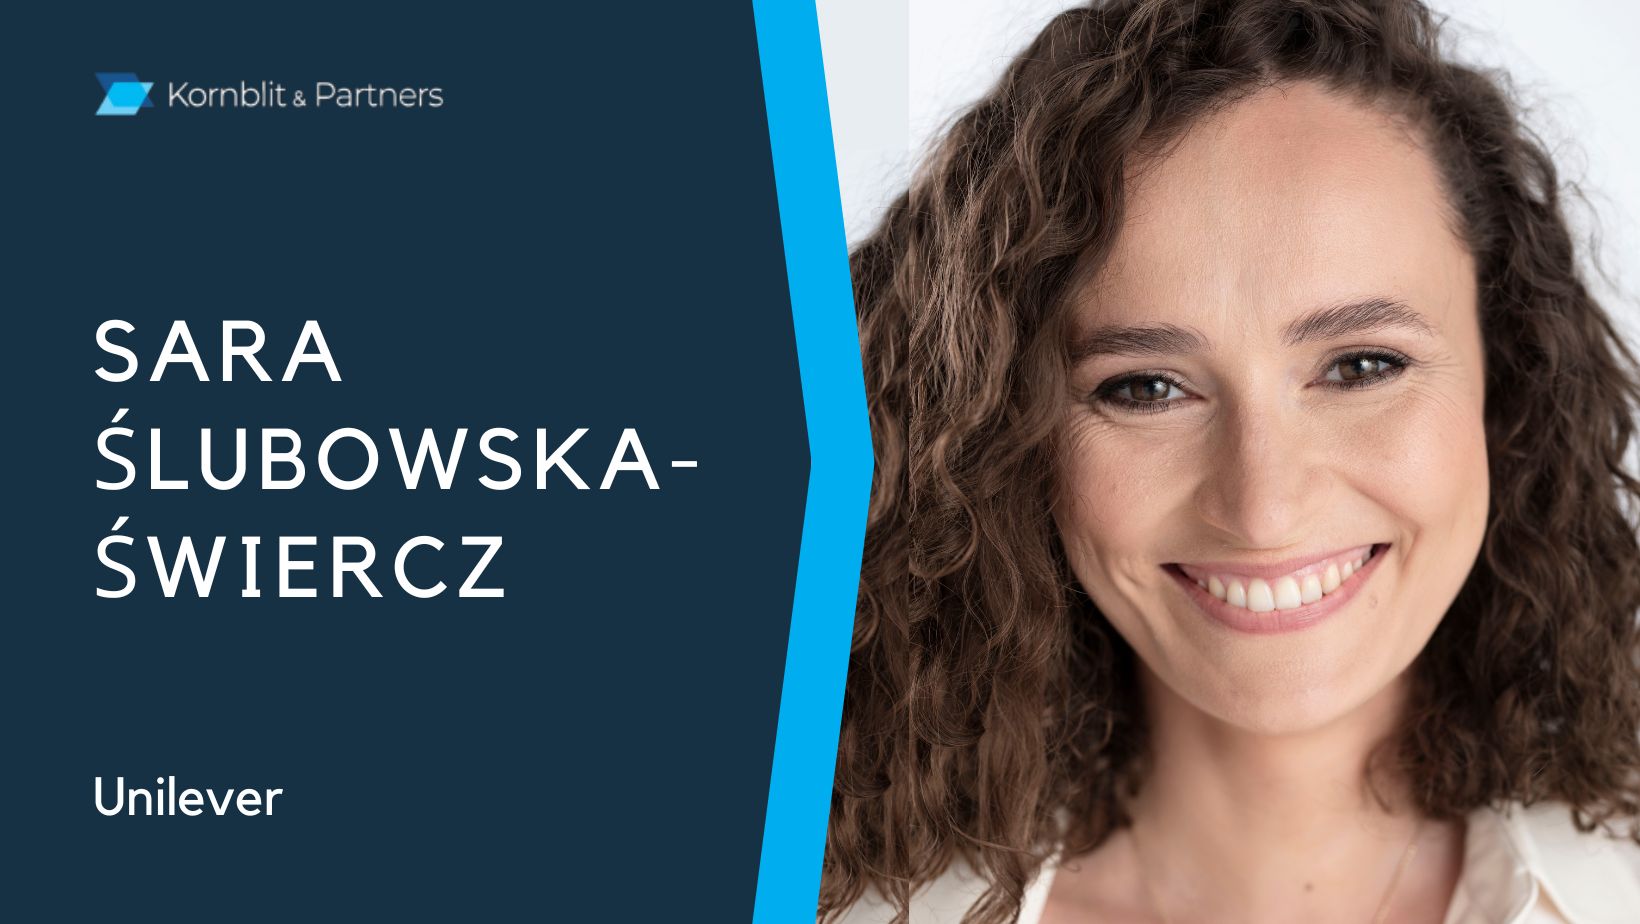 Sara Ślubowska - Świercz, Unilever w wywiadzie dla Kornblit Talks